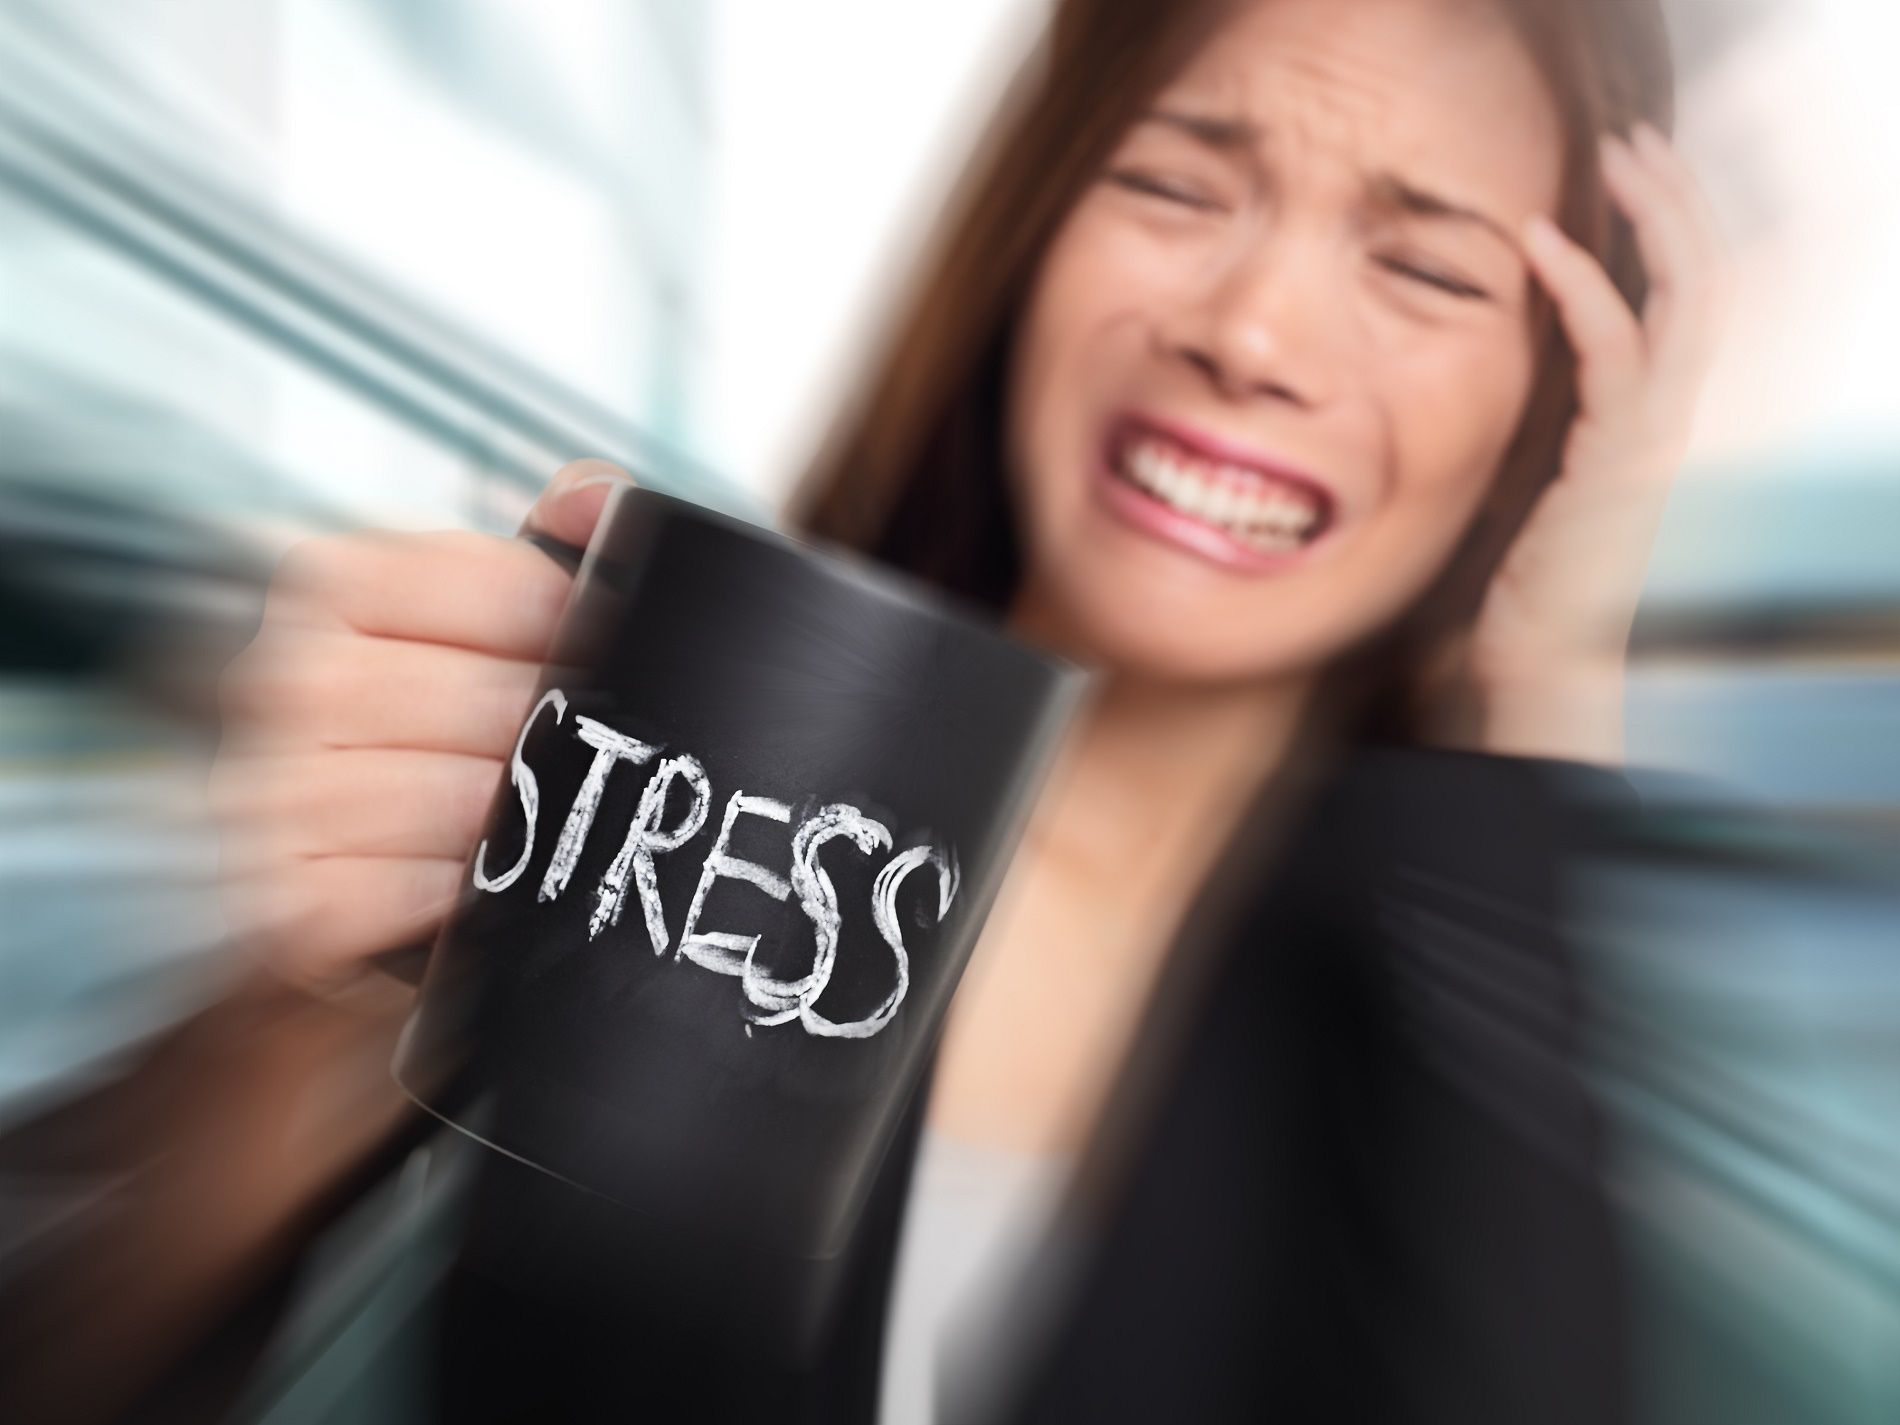 Come le donne e gli uomini affrontano in maniera diversa lo stress